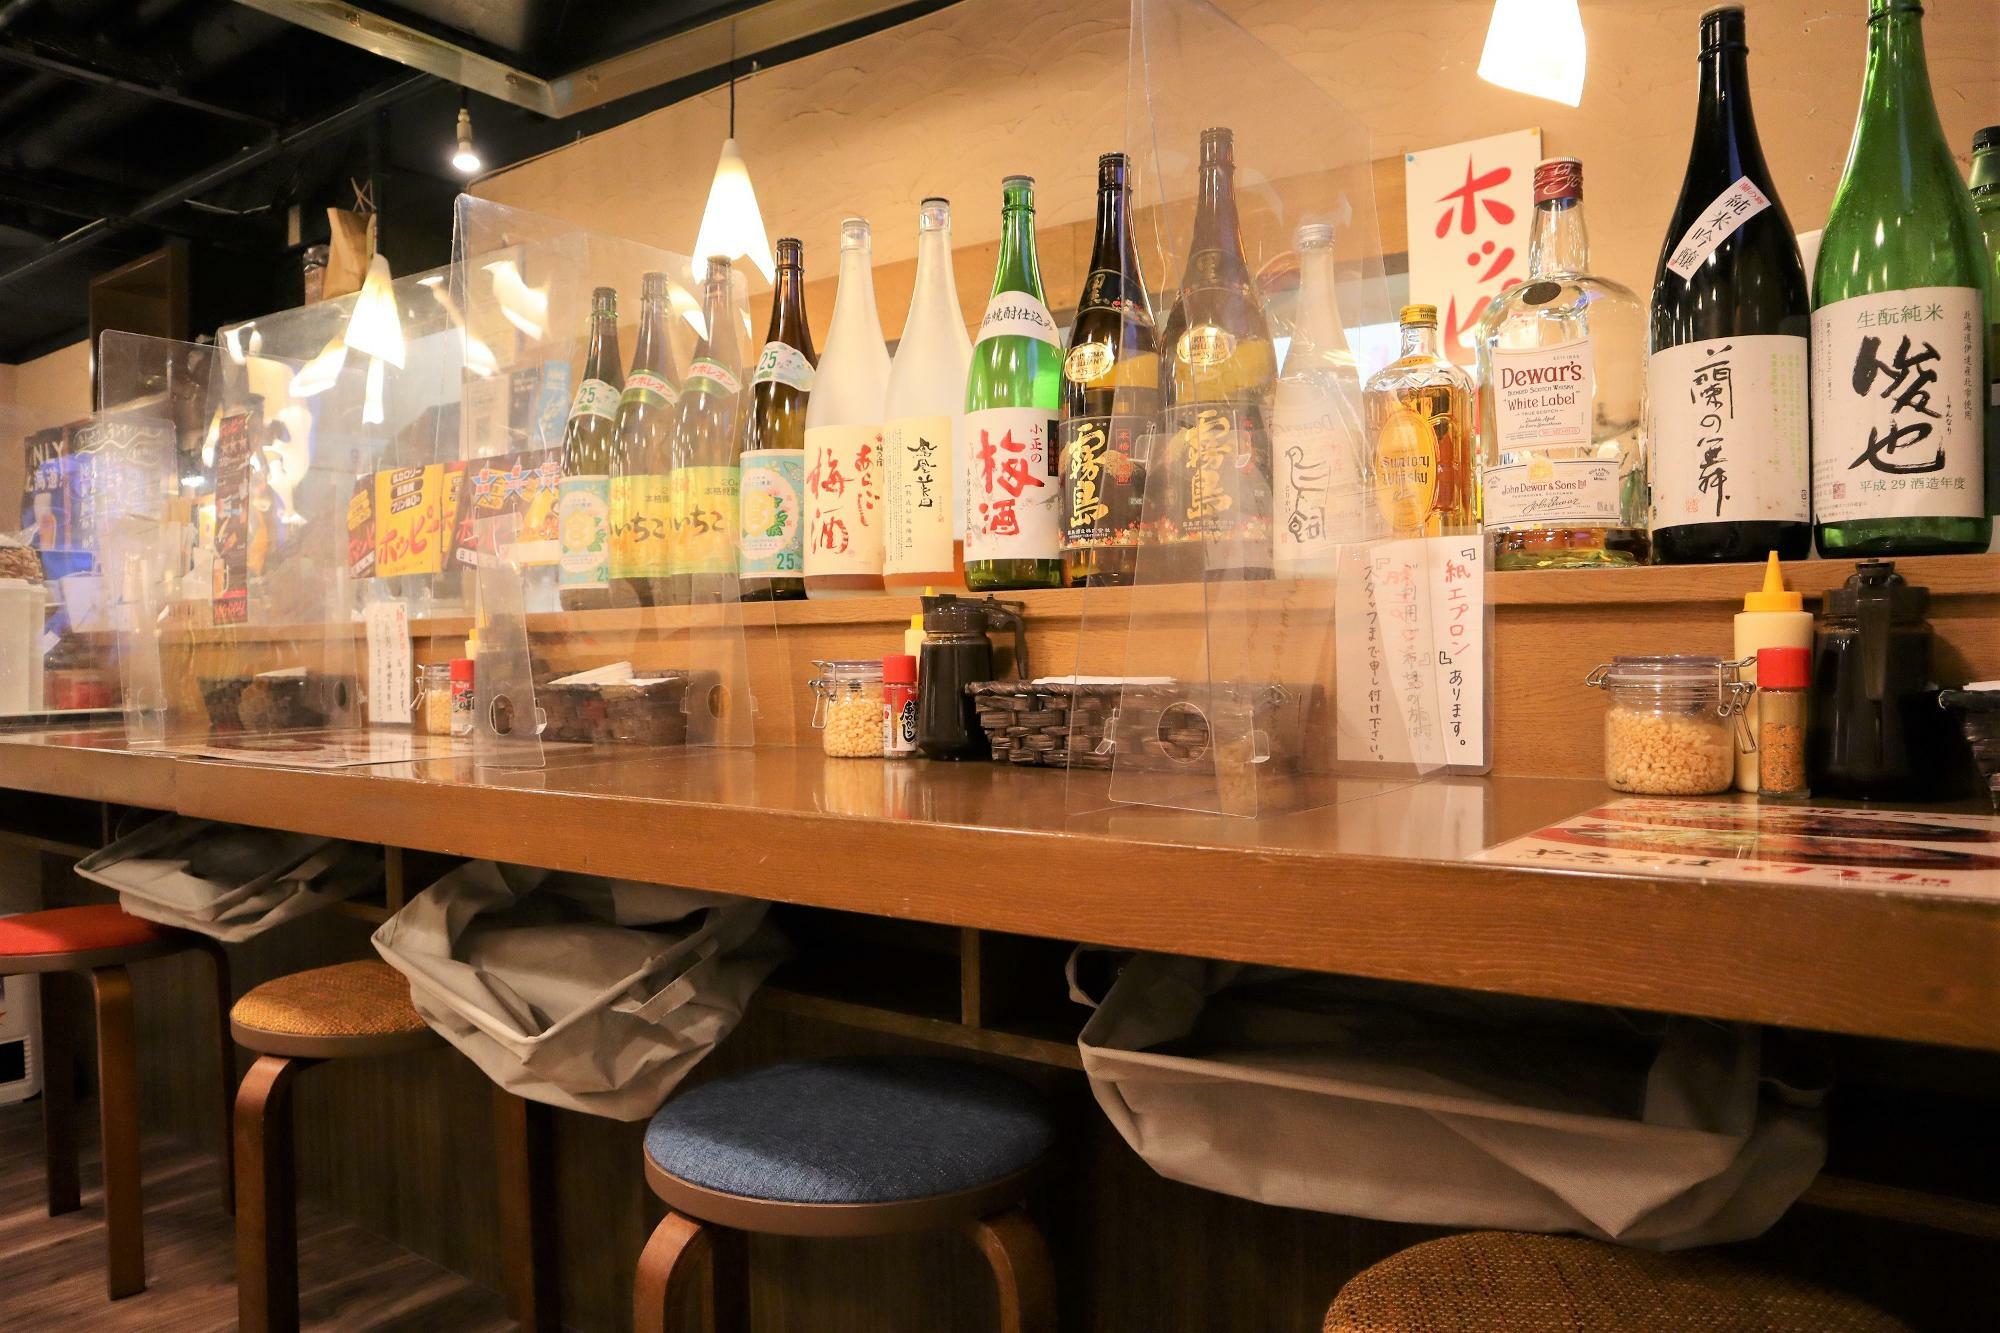 カウンターには室蘭の日本酒「蘭の舞」「俊也」も並んでいます。他に「北力」もあります。